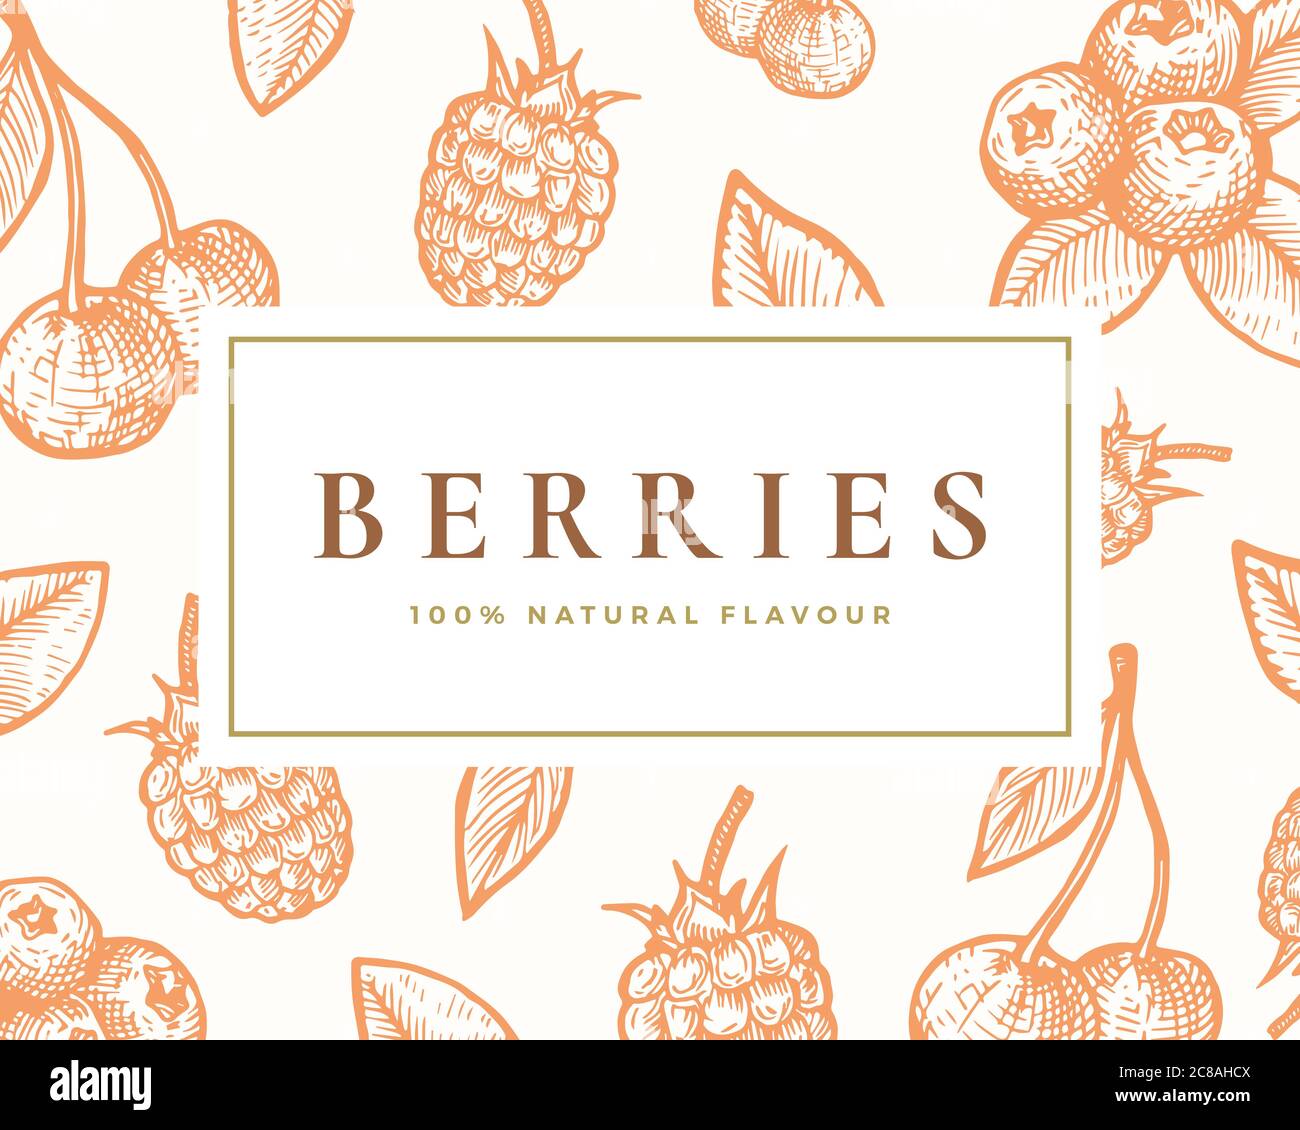 Handgezeichnete Beerenillusterkarte. Abstrakter Vektor Kirschen, Holunderbeere und Blackberry Skizze Hintergrund mit noblen Retro Typografie. Stock Vektor